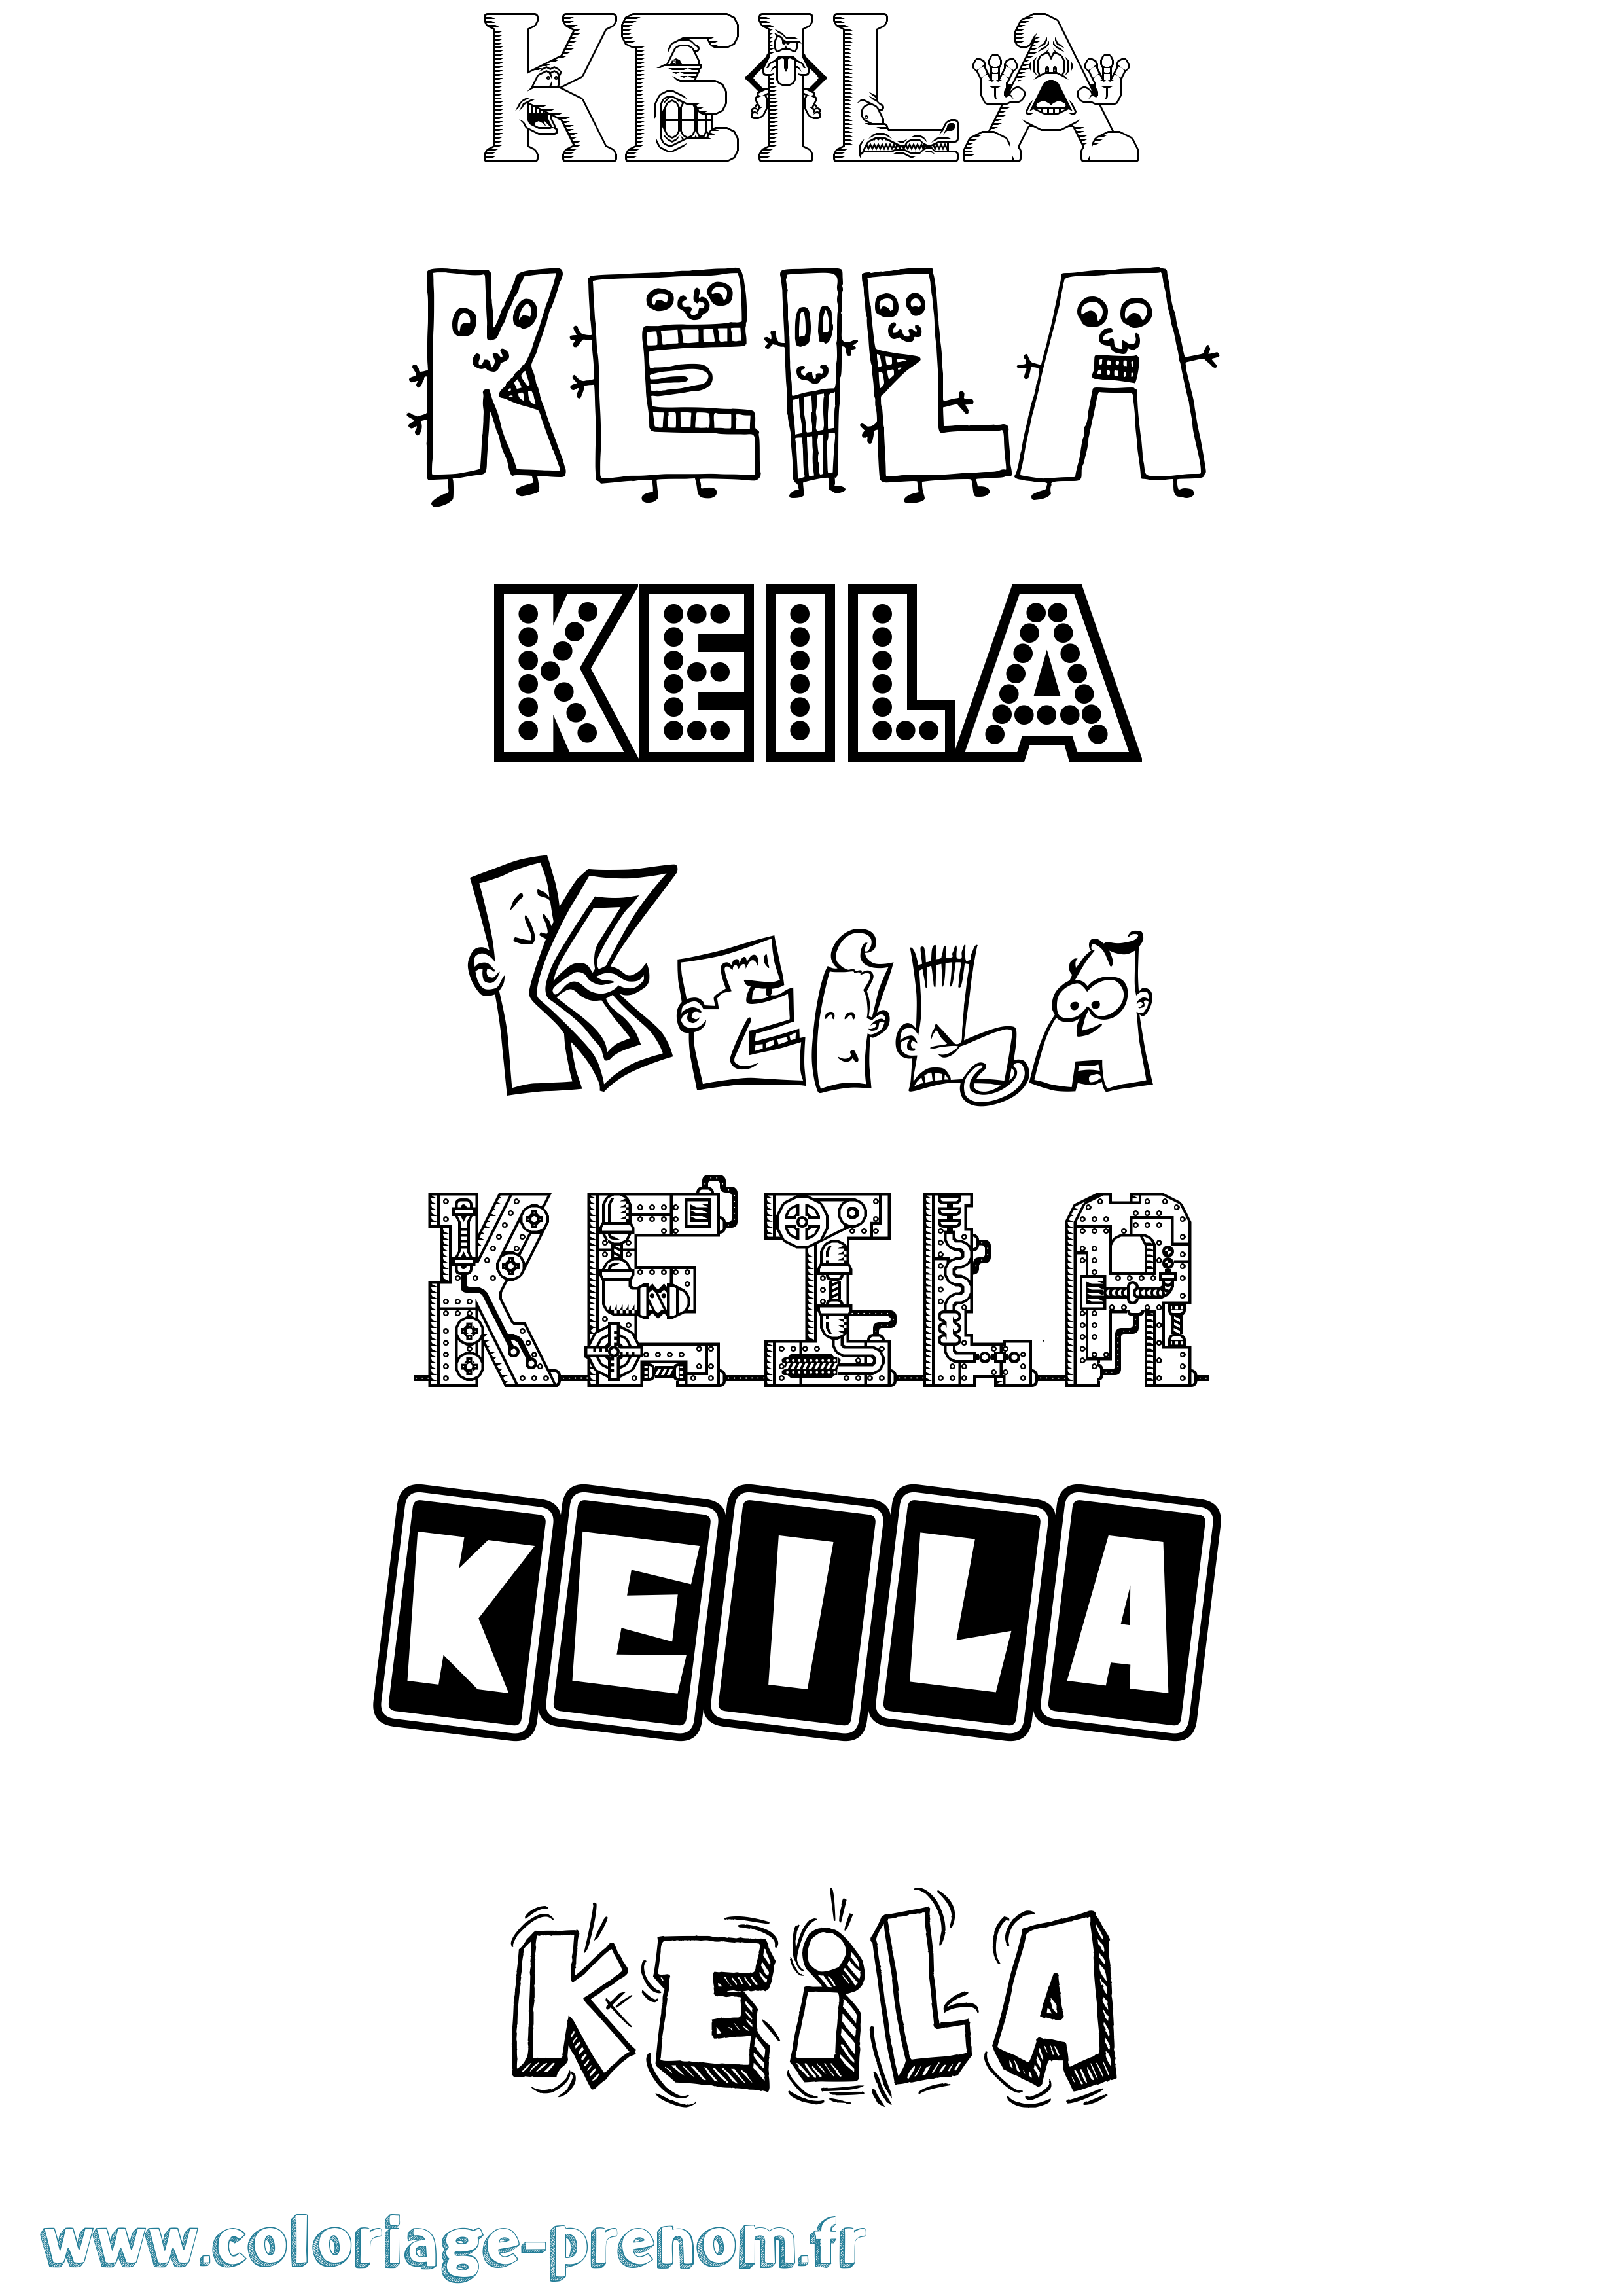 Coloriage prénom Keila Fun